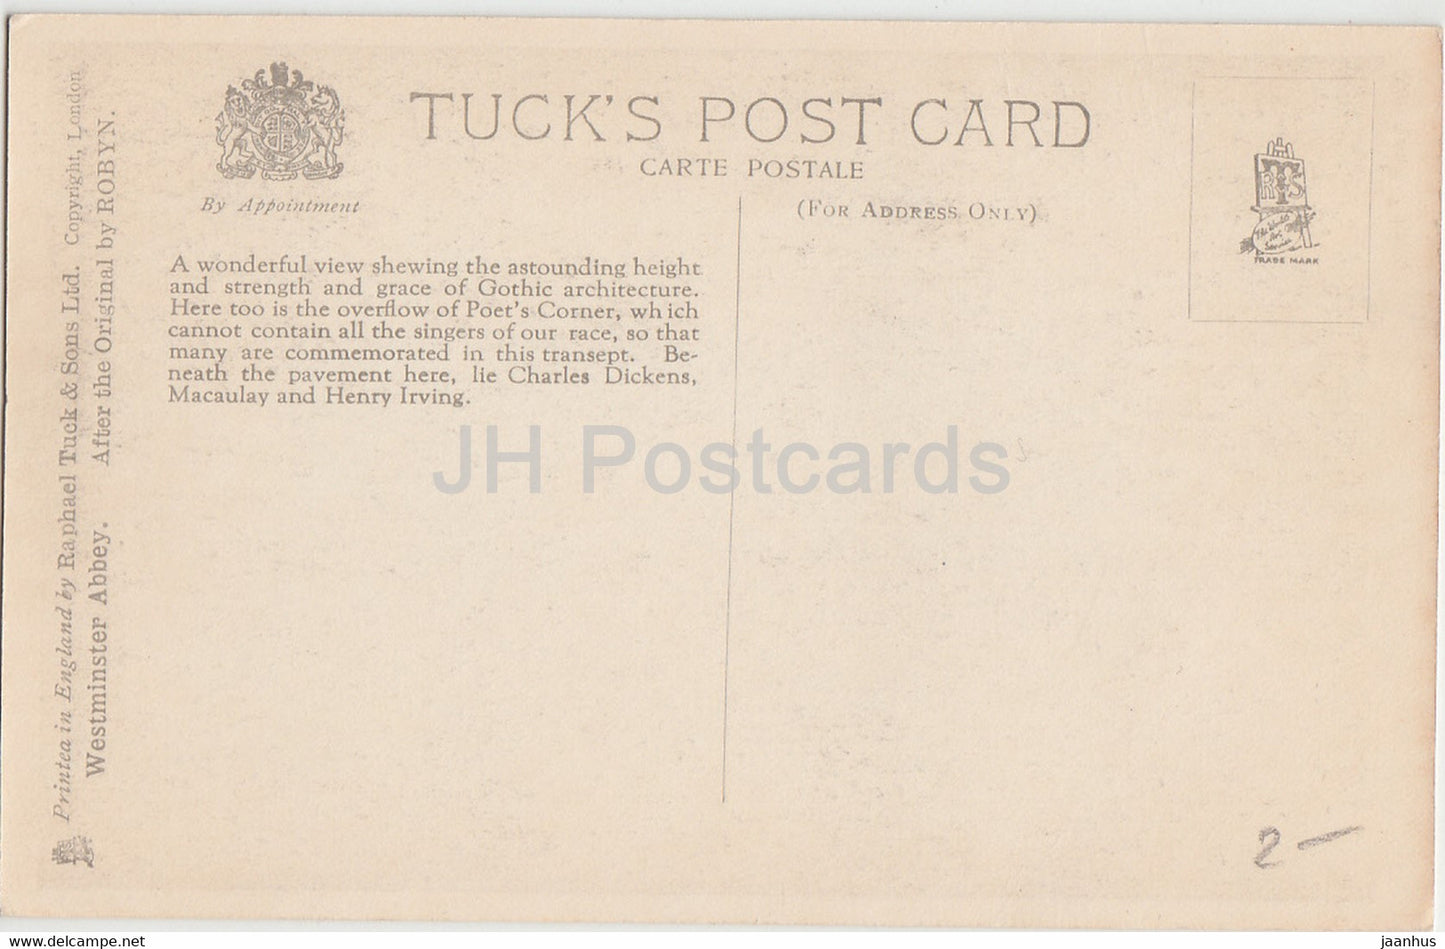 London - Westminster Abbey - Das südliche Querschiff - alte Postkarte - England - Vereinigtes Königreich - unbenutzt